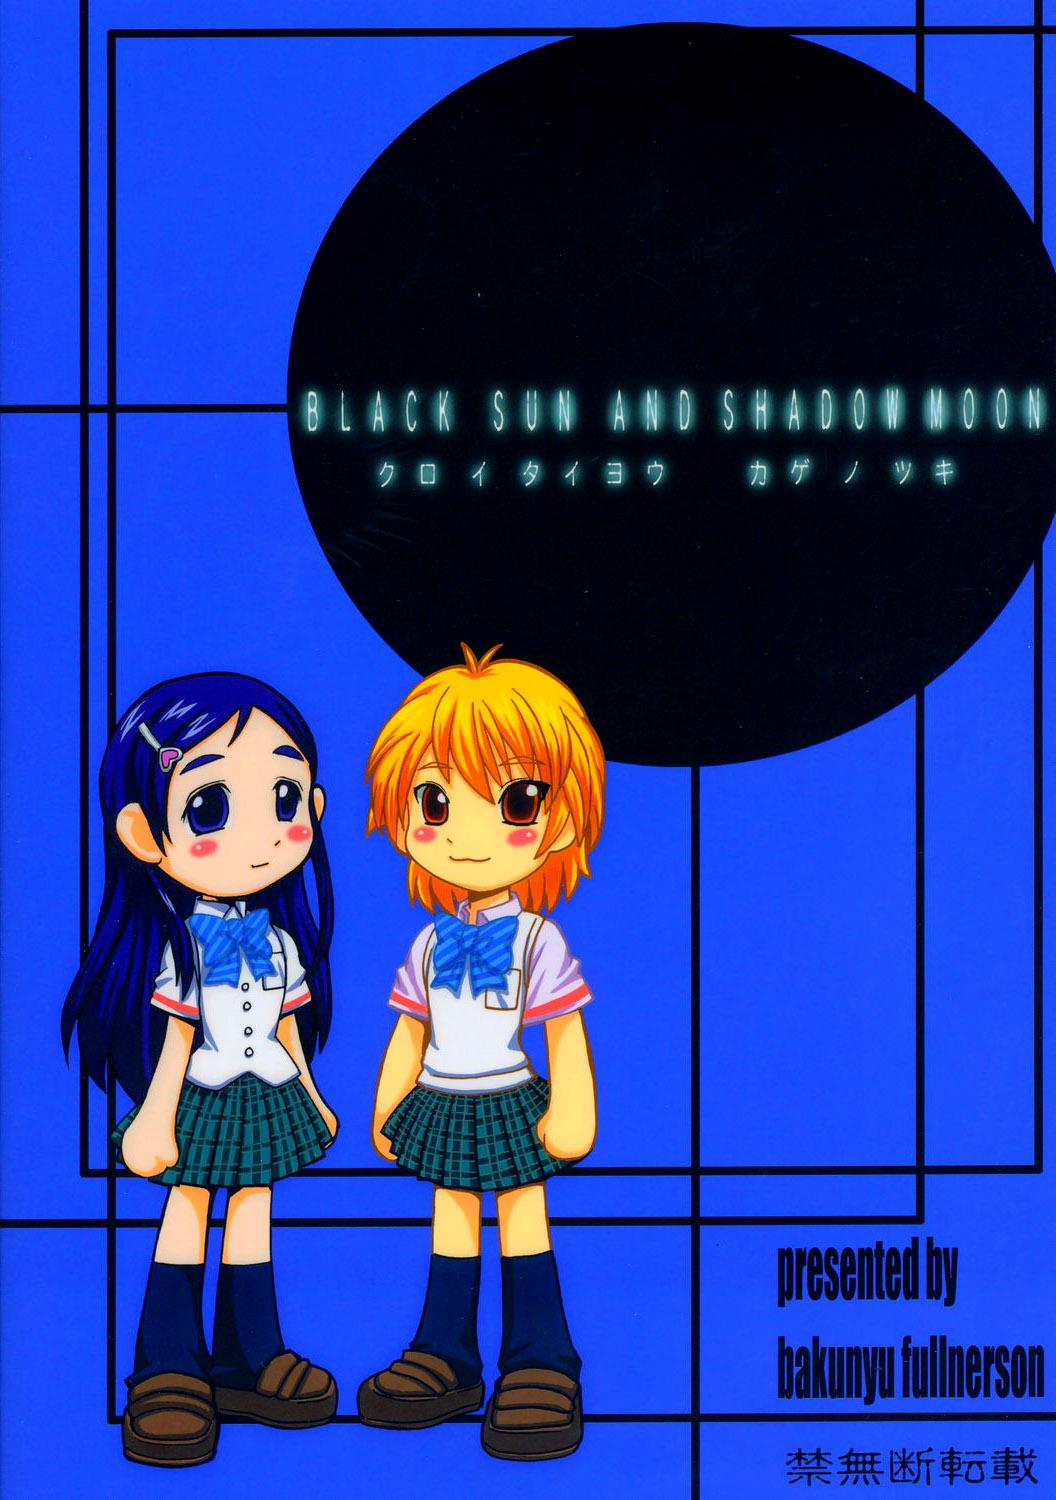 Kuroi Taiyou Kageno Tsuki EPISODE 2: somebody love you - Black Sun and Shadow Moon 2 43